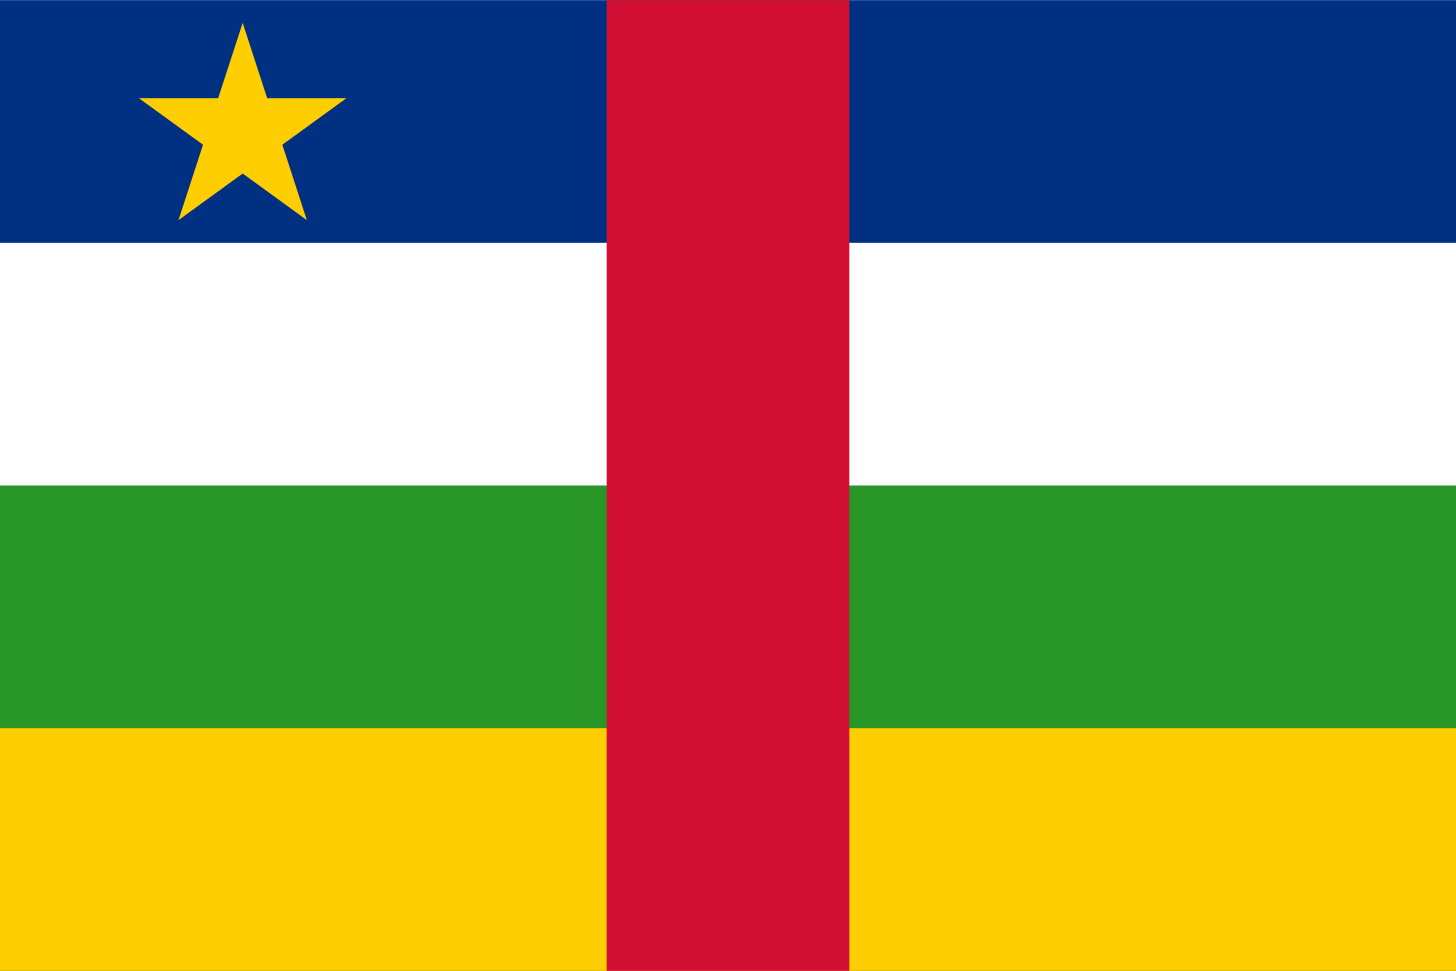 Drapeau de la République centrafricaine — Wikipédia